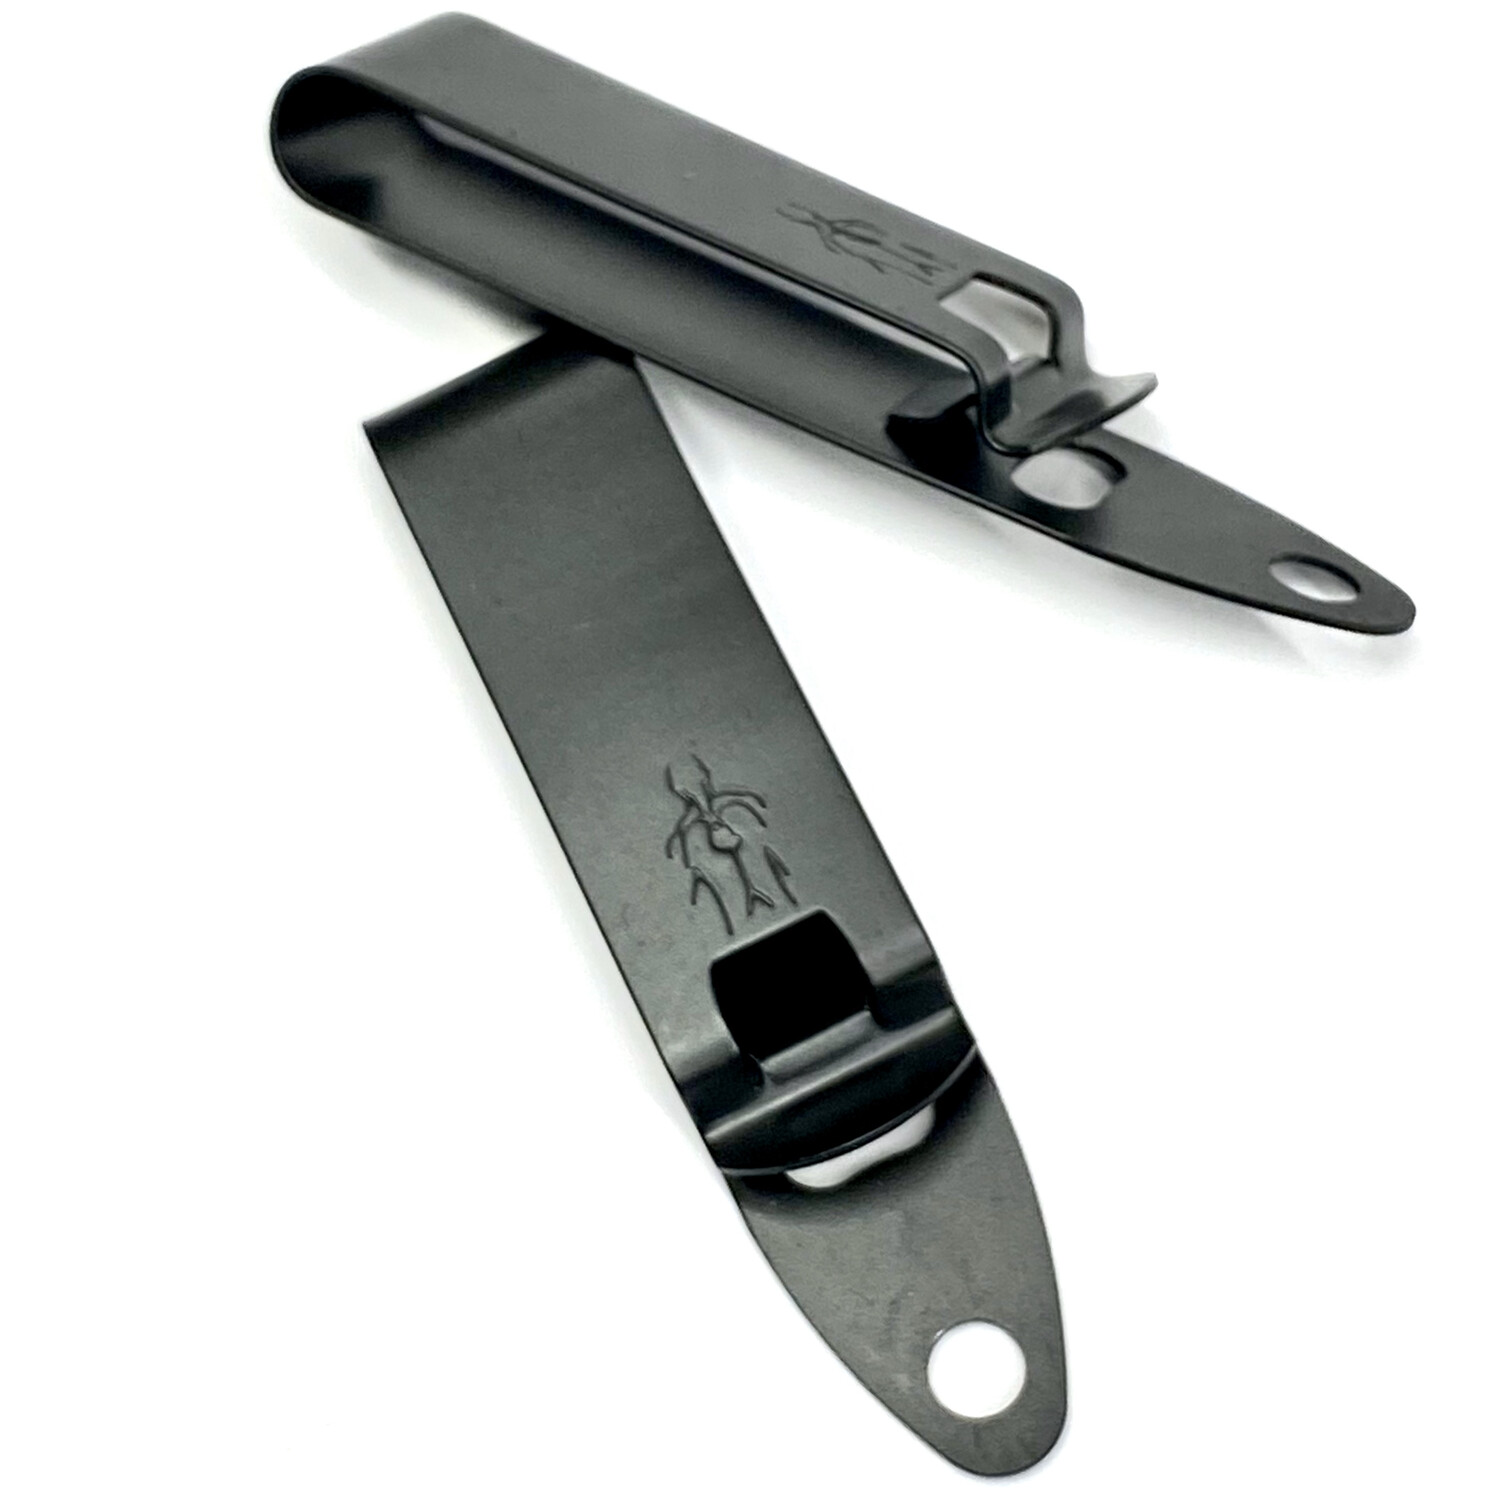 Mod 4 Super Shorty - HLR Discreet Gear Clip™ - 1.5" belt - SHS **Back In Stock 3/25**